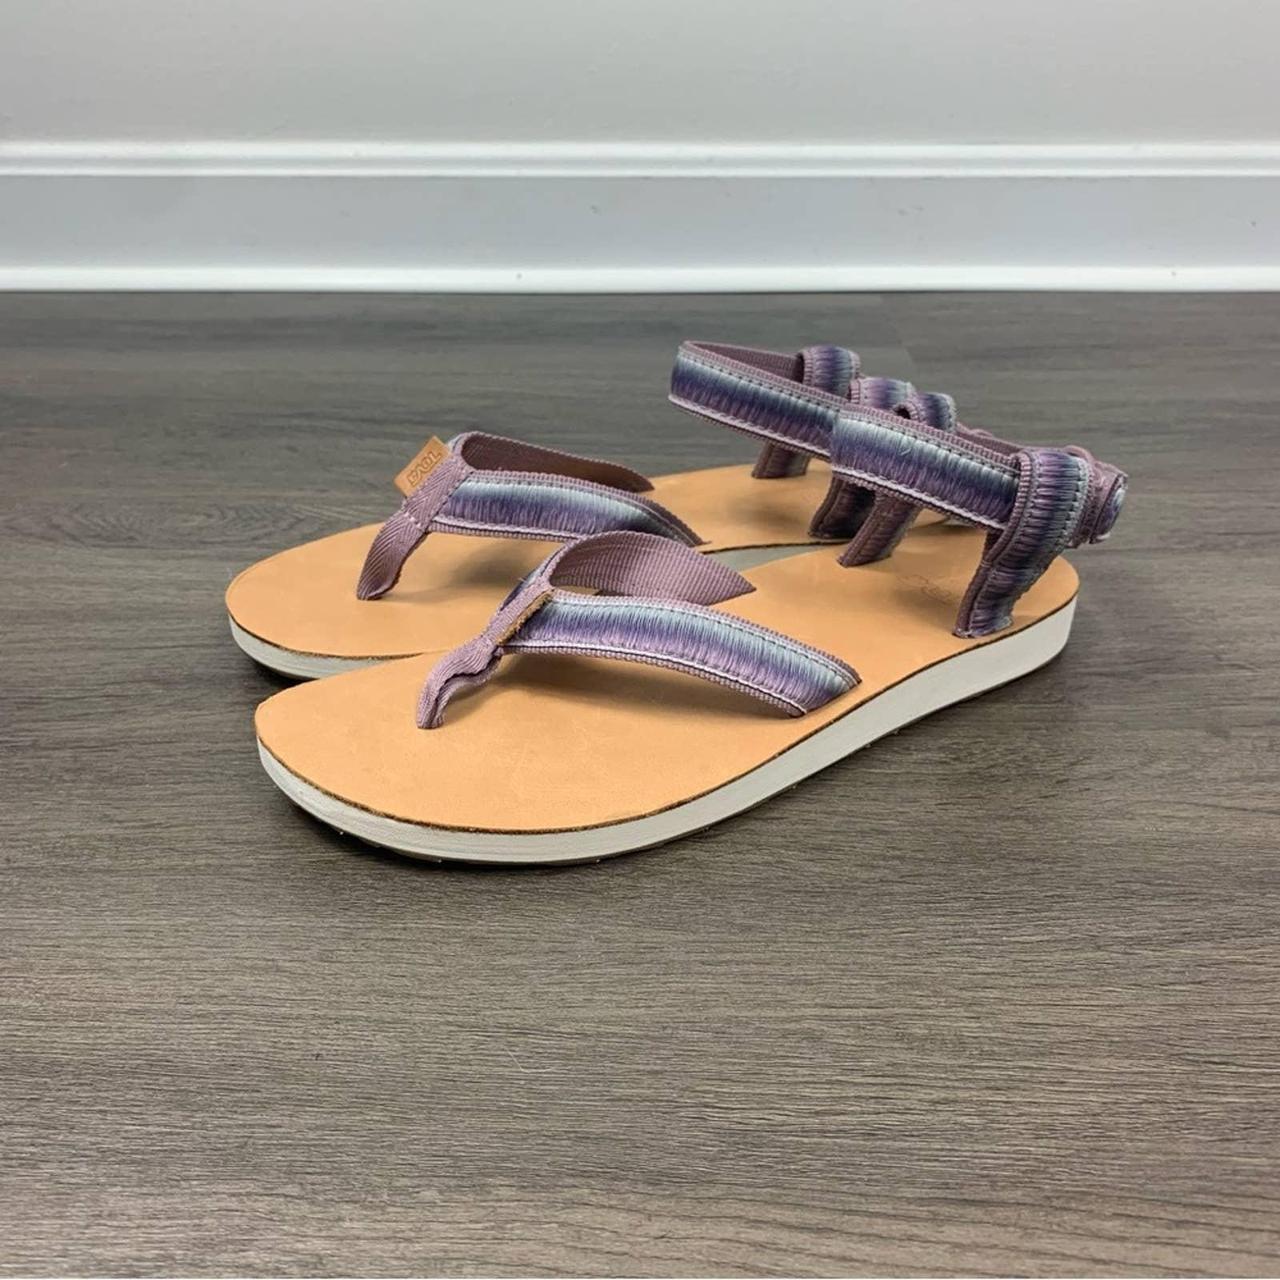 Incarijk Overtreding Kunstmatig Teva Original Purple Ombre Sandals Flip Flops... - Depop